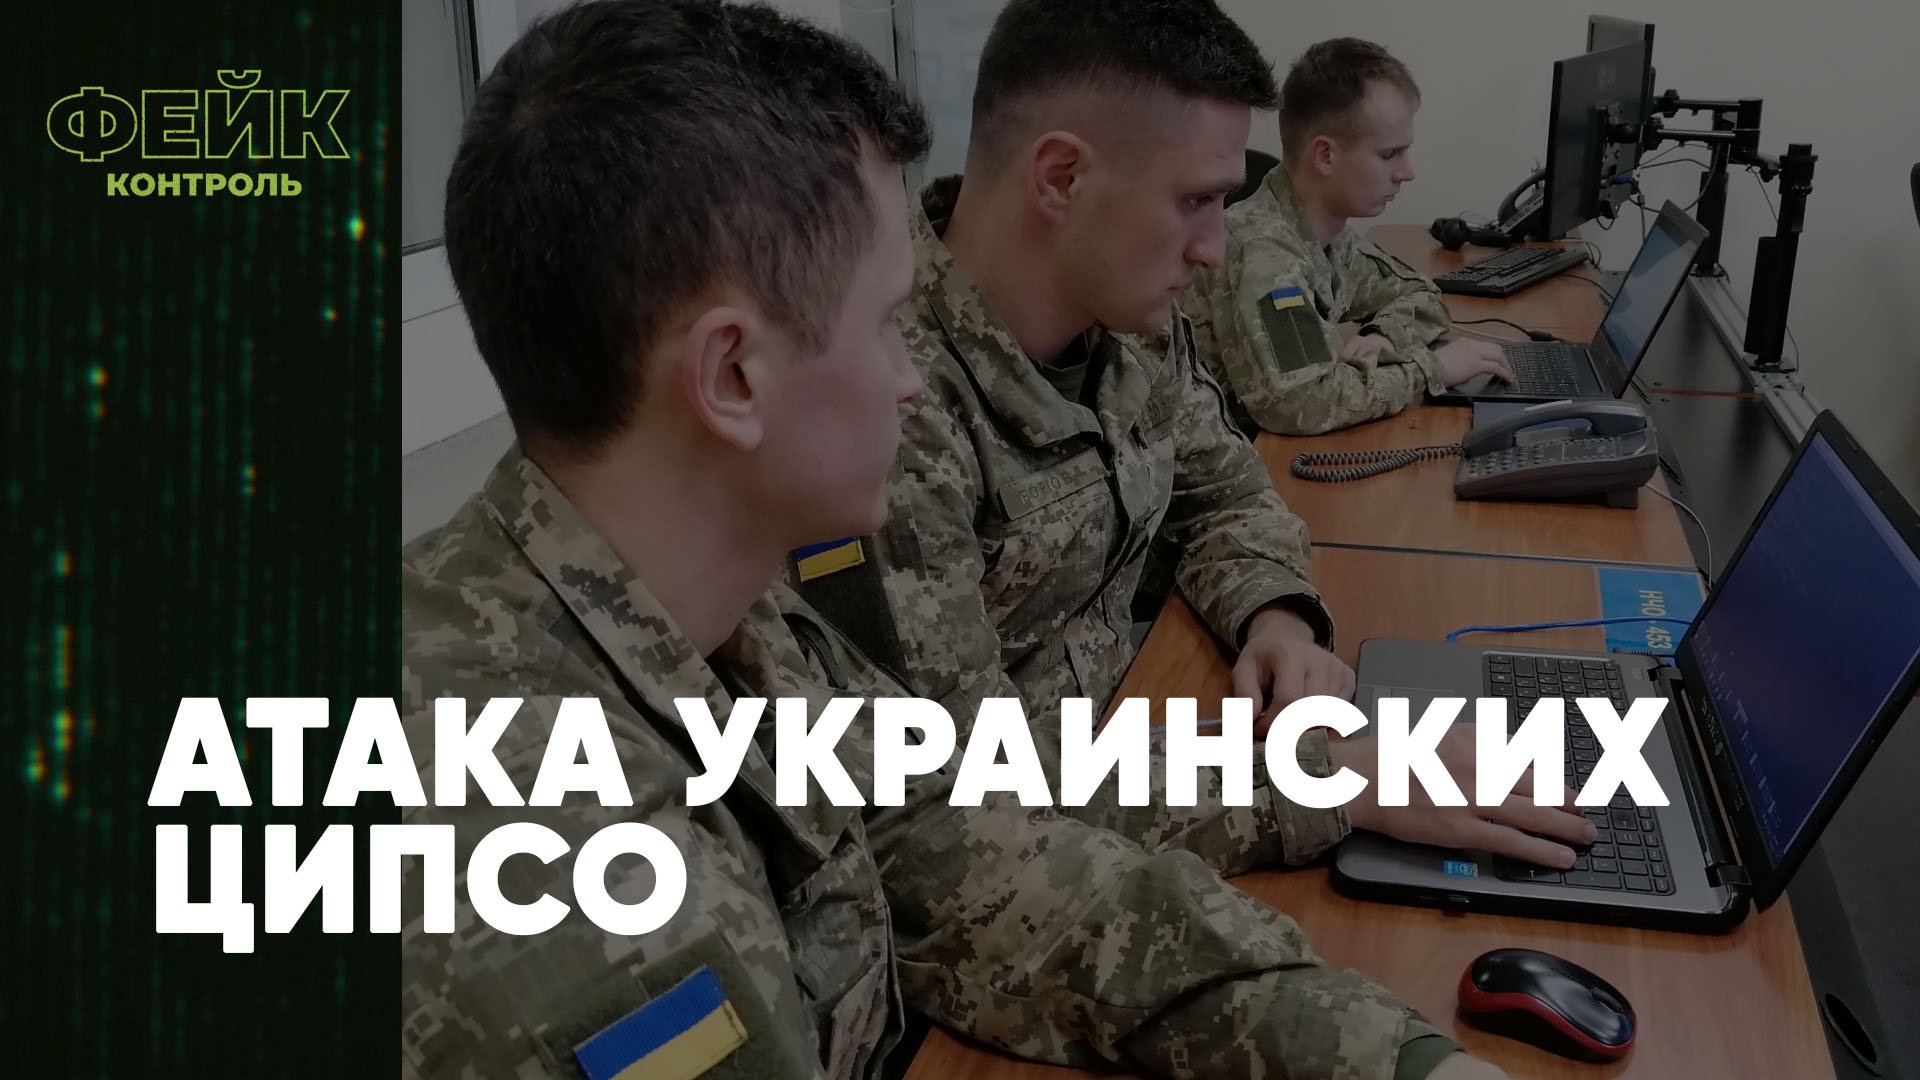 Новые атаки украинских ЦИПсО | Фейк-контроль